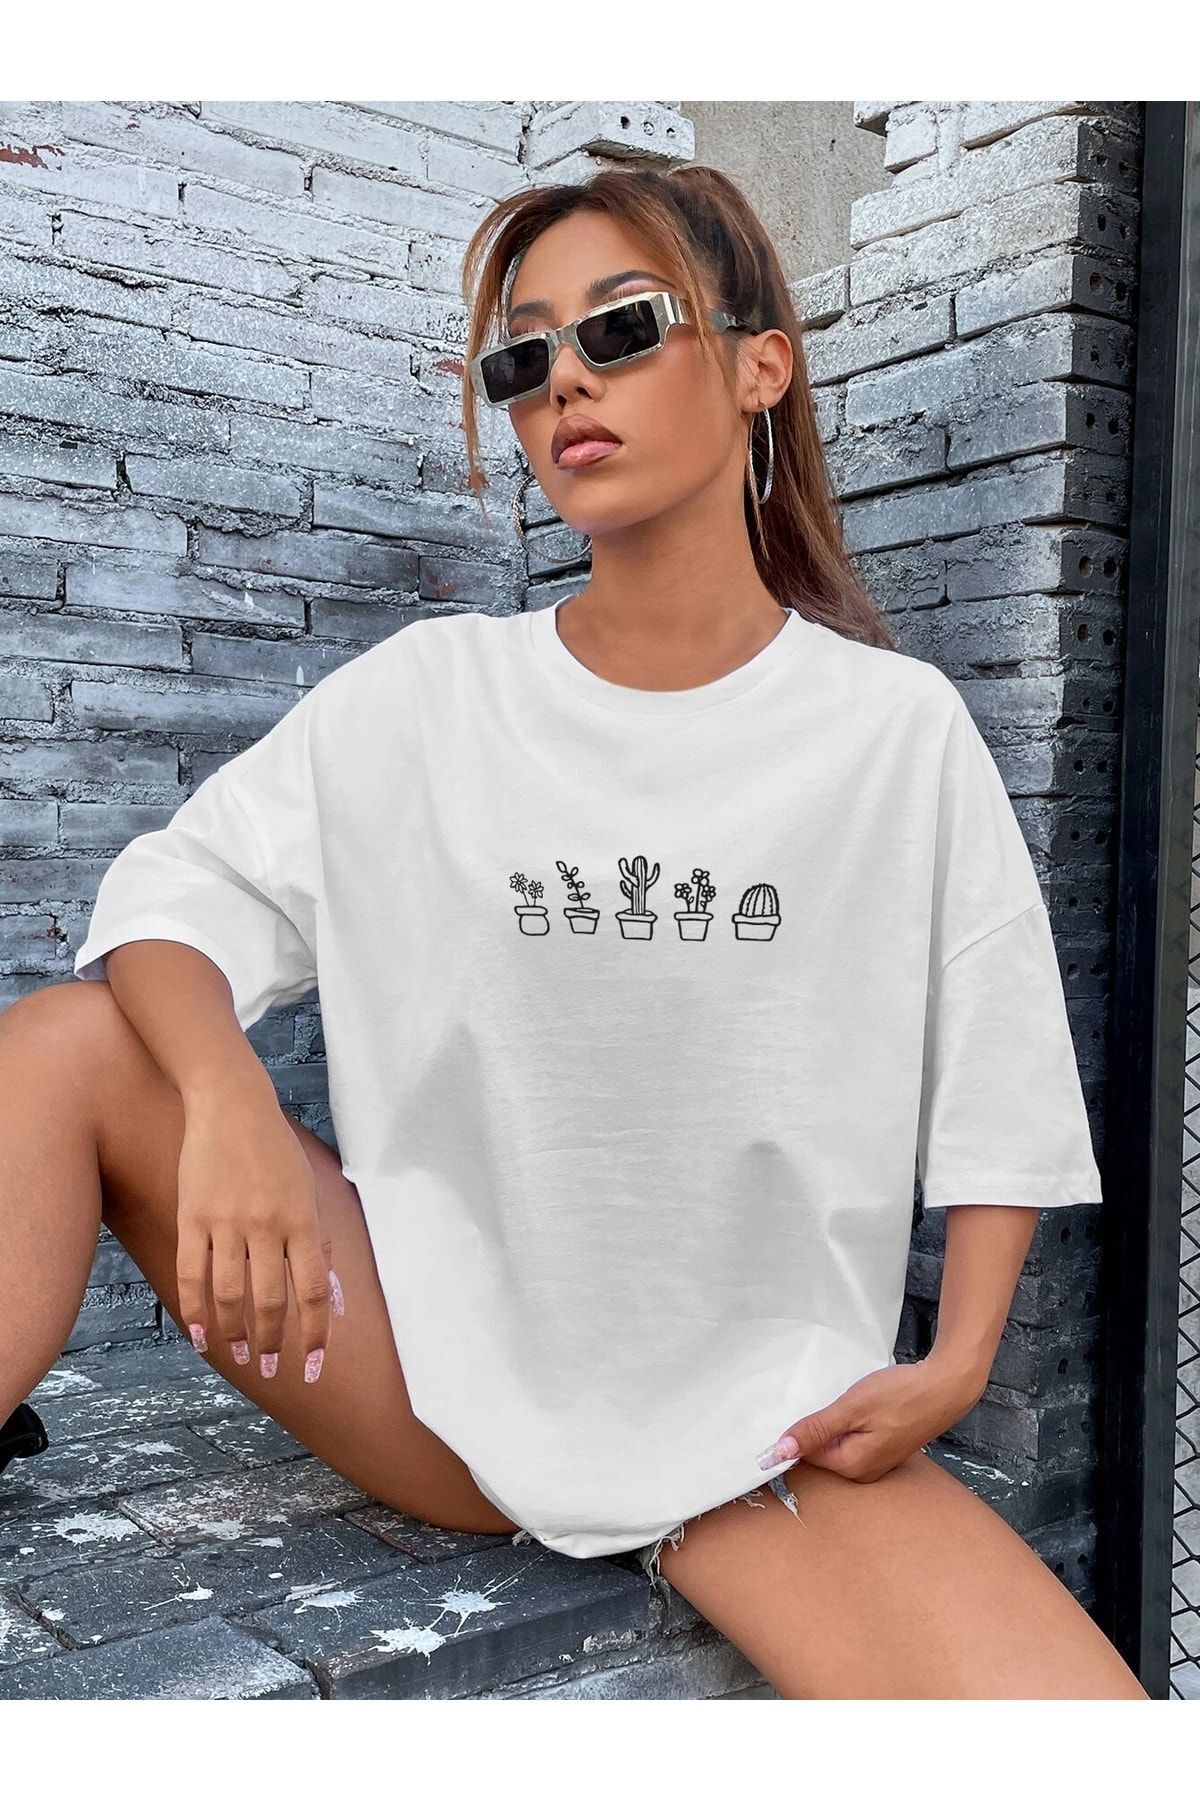 DAXİS Sportwear Company Kadın Kaktüs Baskılı Oversize Tshirt